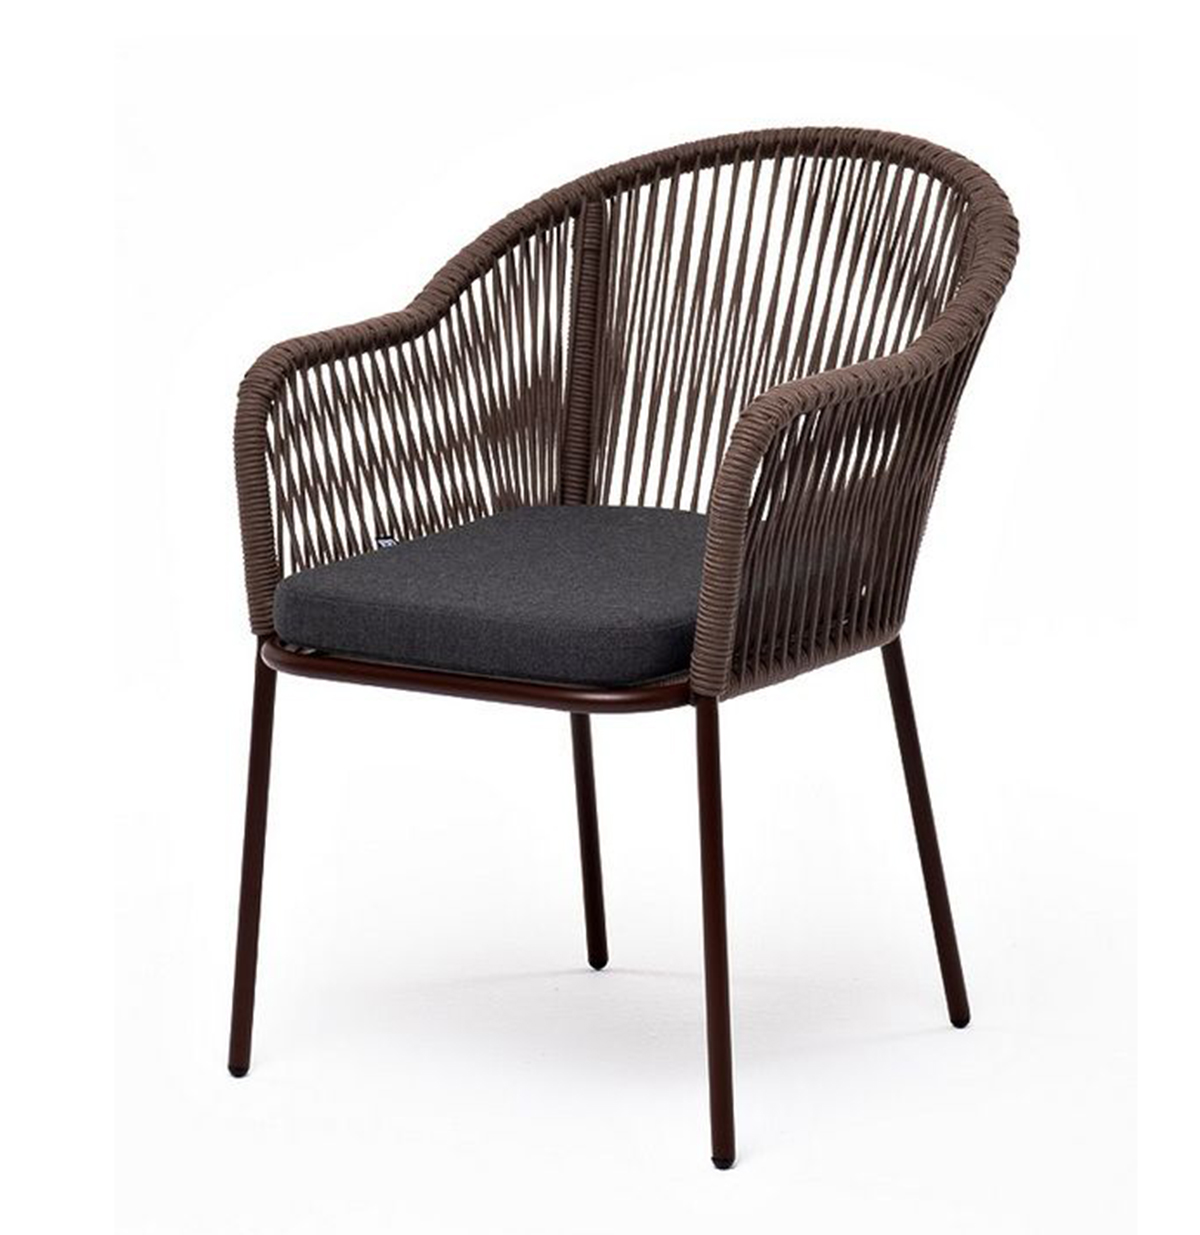 Плетеный стул из роупа Лион коричневый, ткань темно-серая стул лондо серый ткань зигзаг оливковый ткань